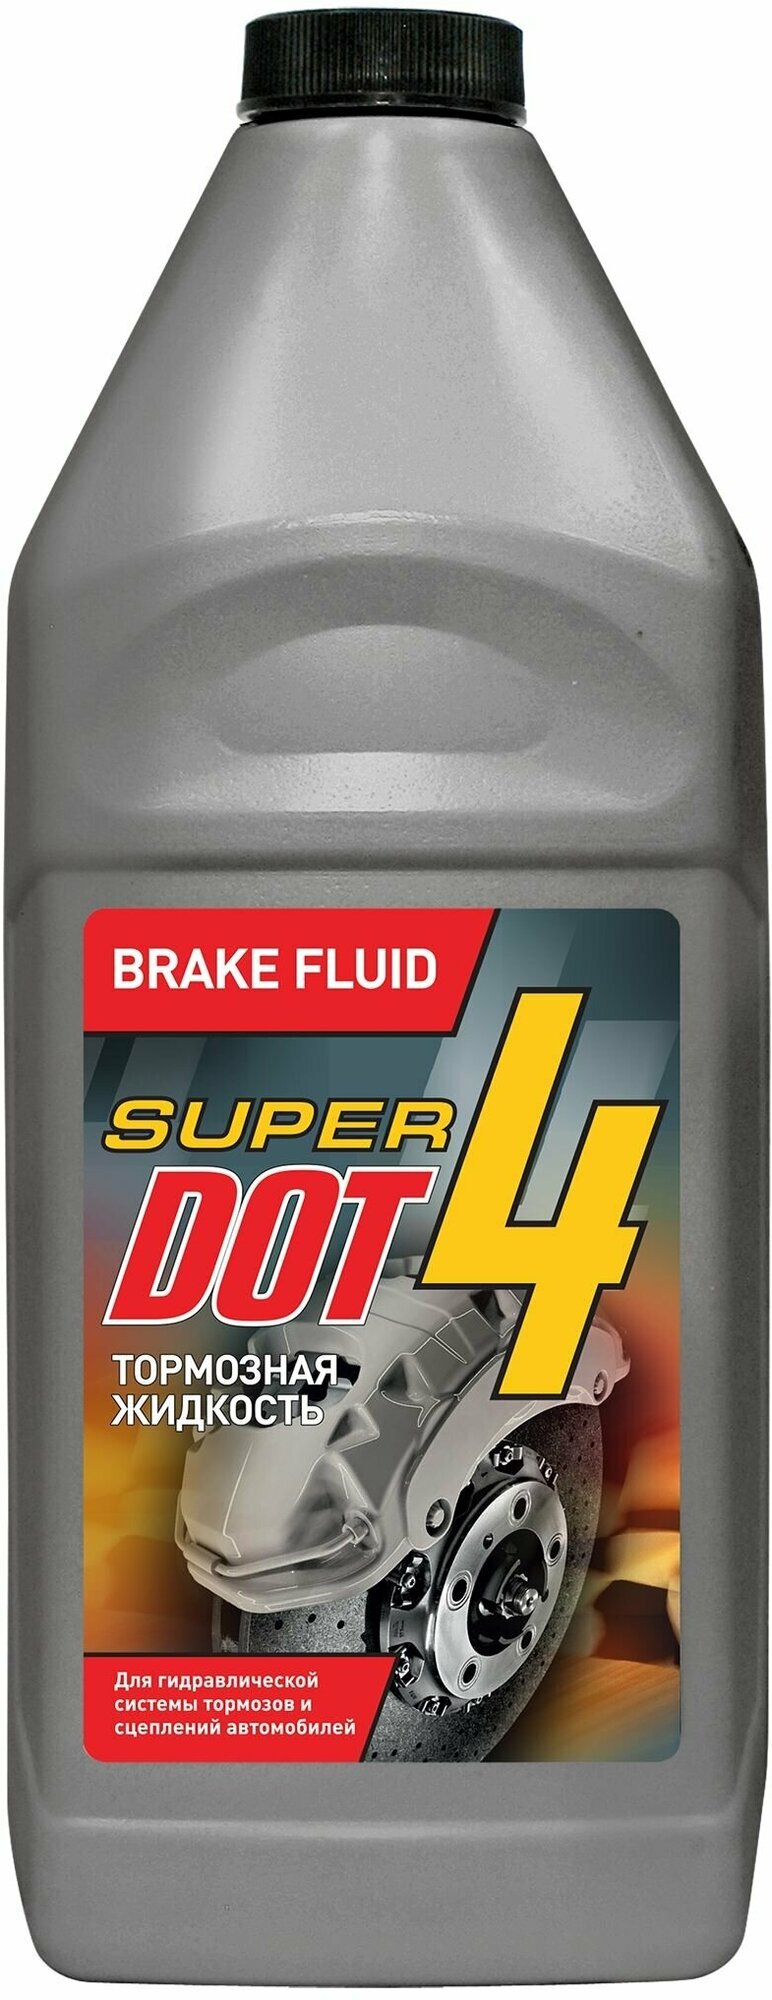 Жидкость тормозная СуперДот-4 880г Тосол Синтез SUPERDOT 430130012